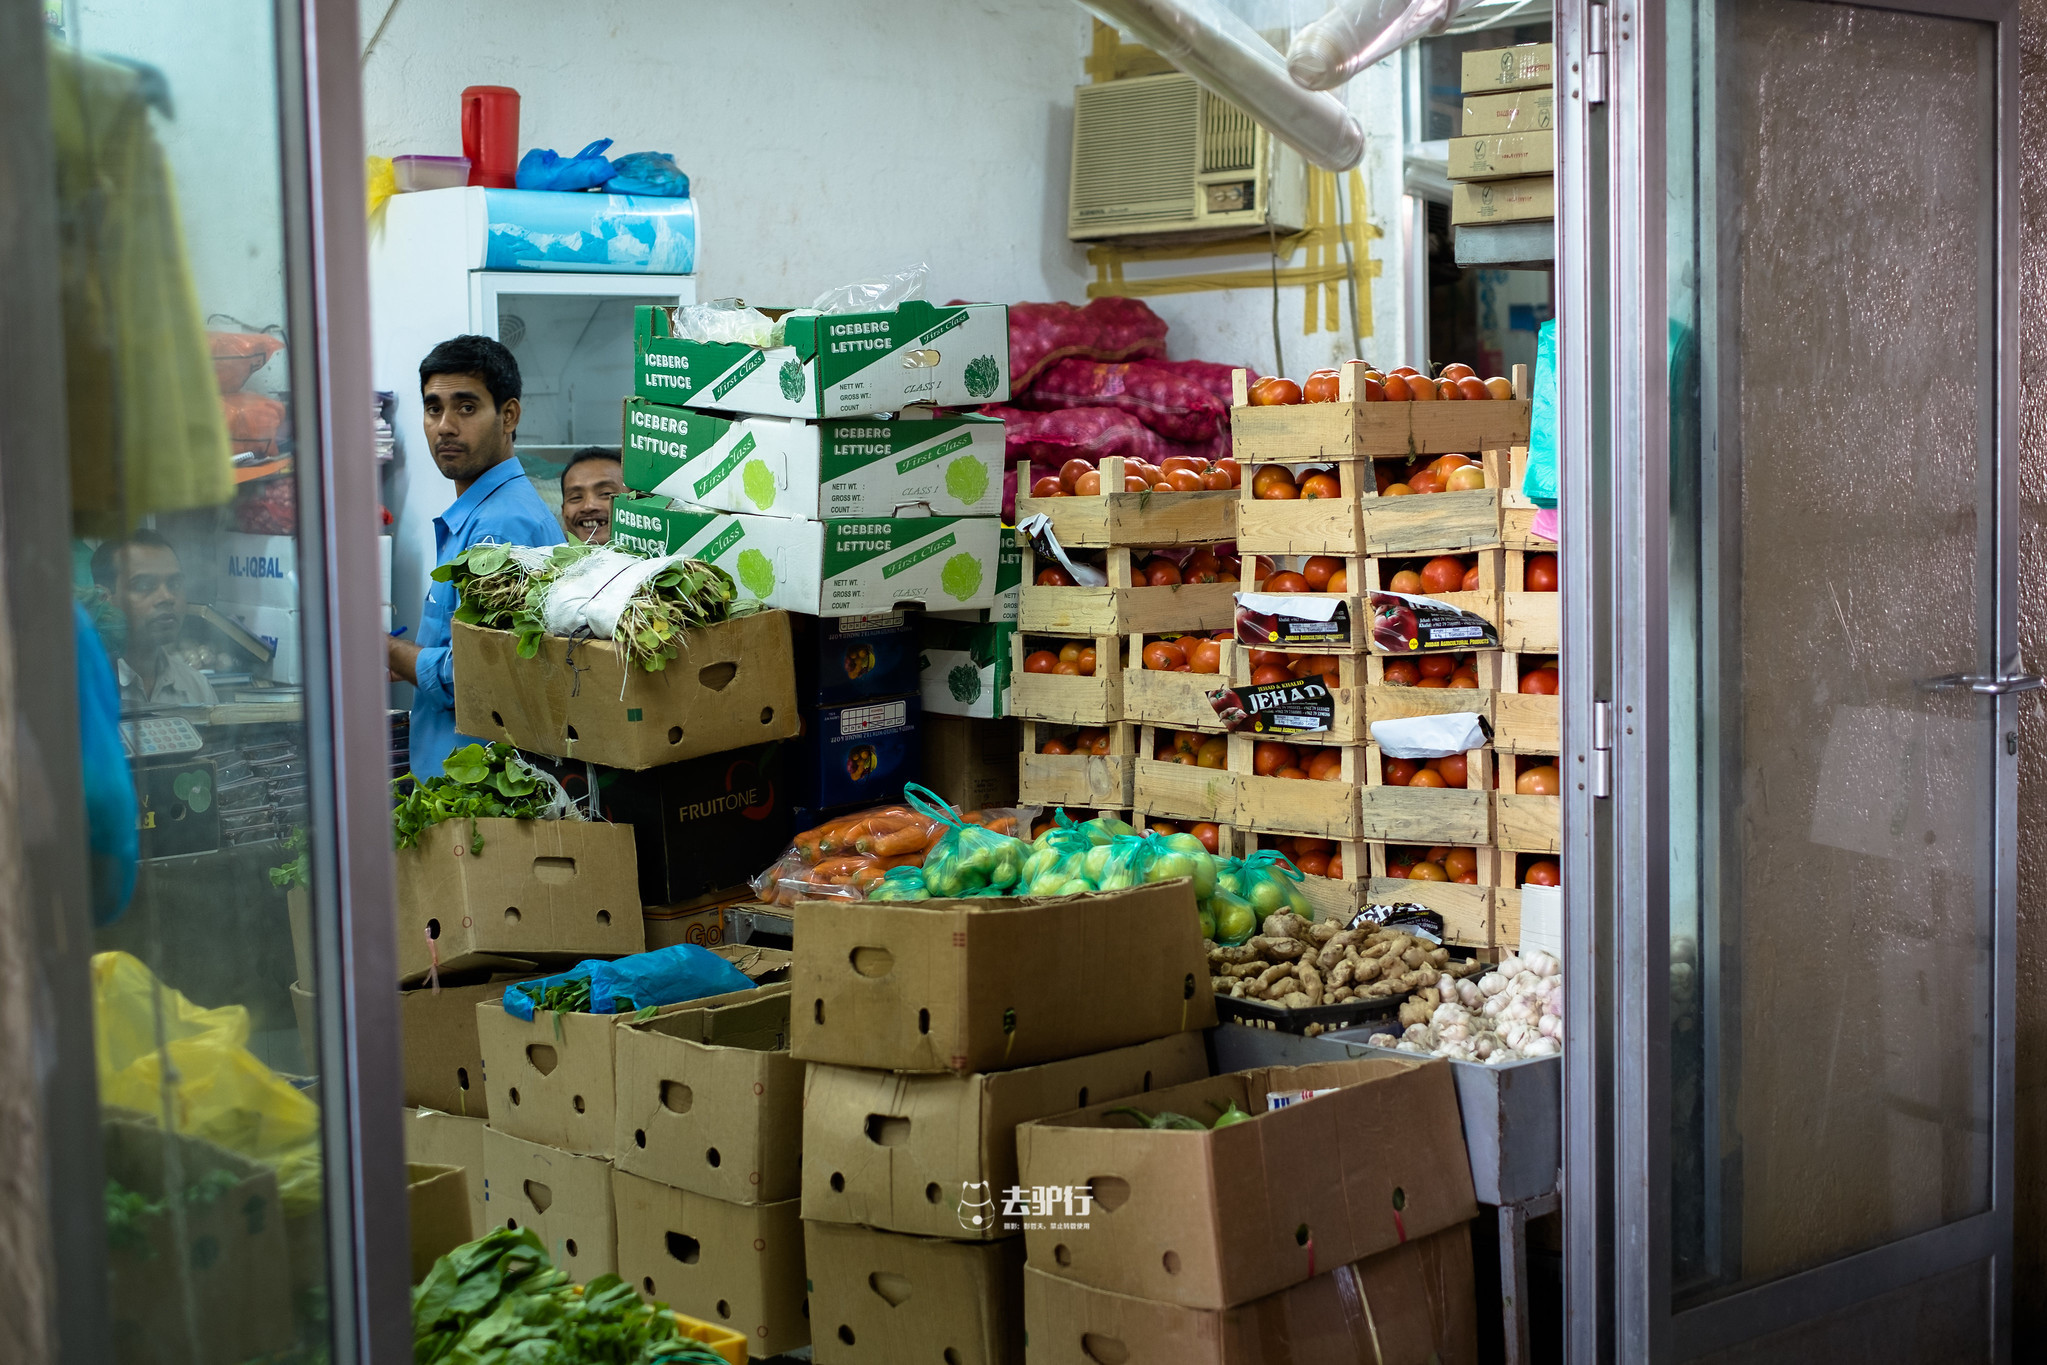 实拍迪拜集市:土豪才能吃得起水果,穷人才配吃海鲜